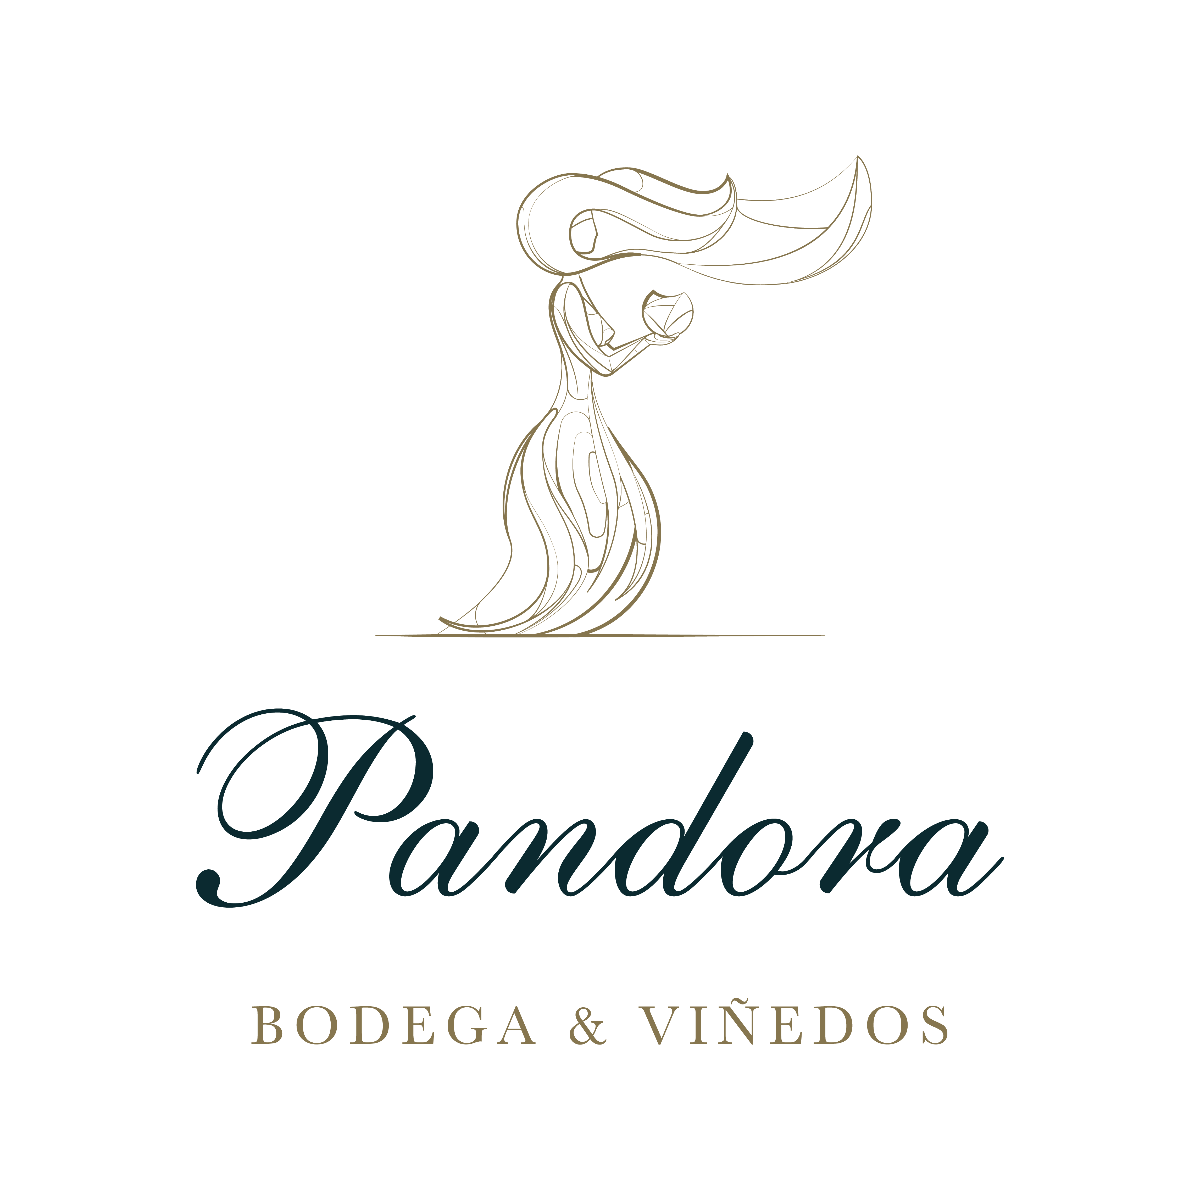 The logo for Bodegas Pandora